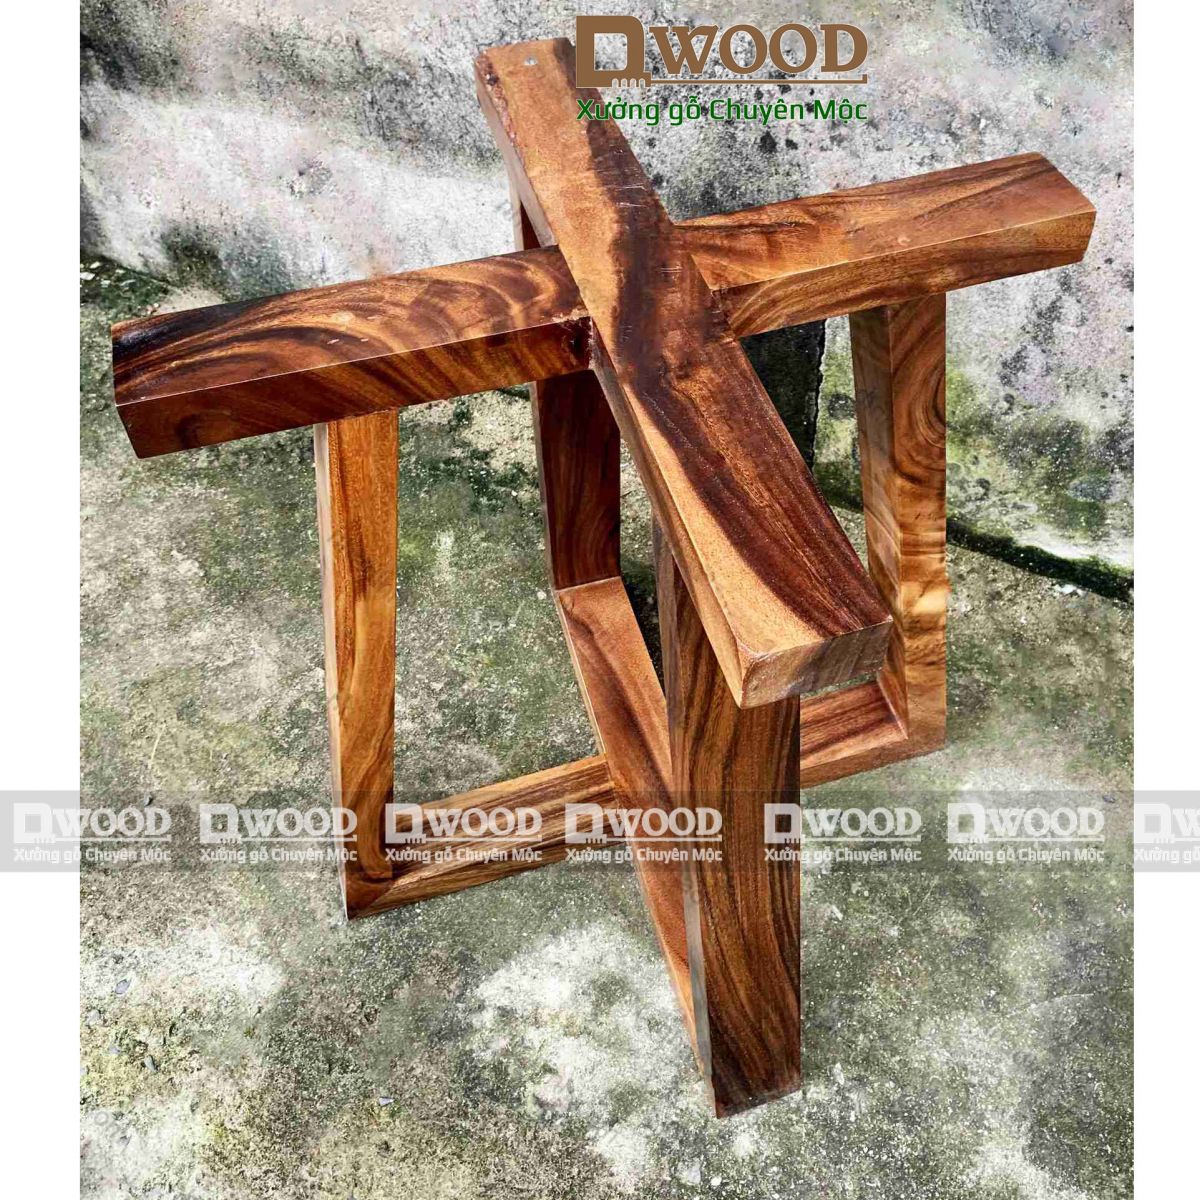 Chân bàn Dwood chữ thập gỗ me tây